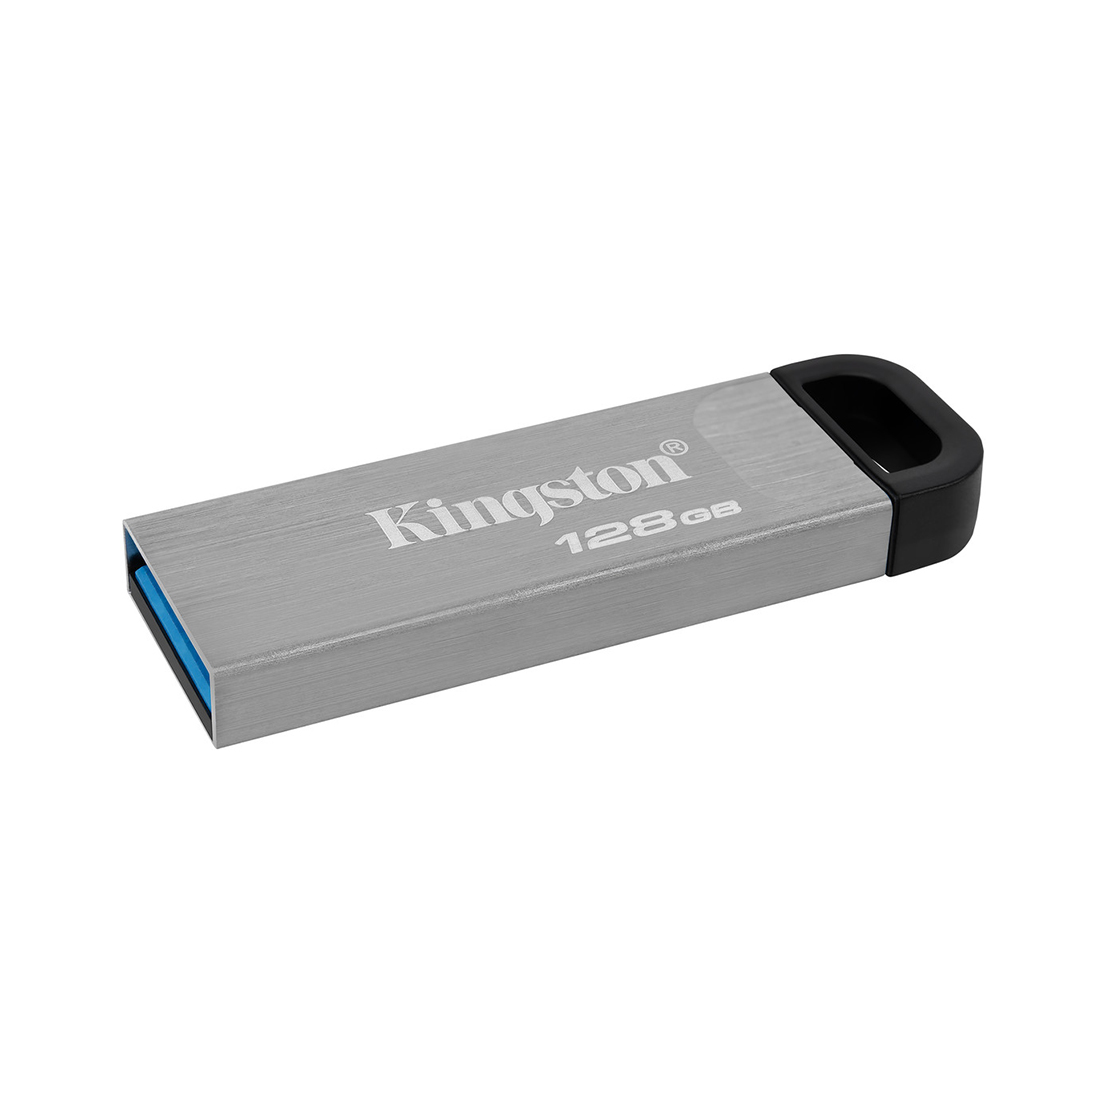 Flash DRIVE USB 128Gb DTKN (Kingston)